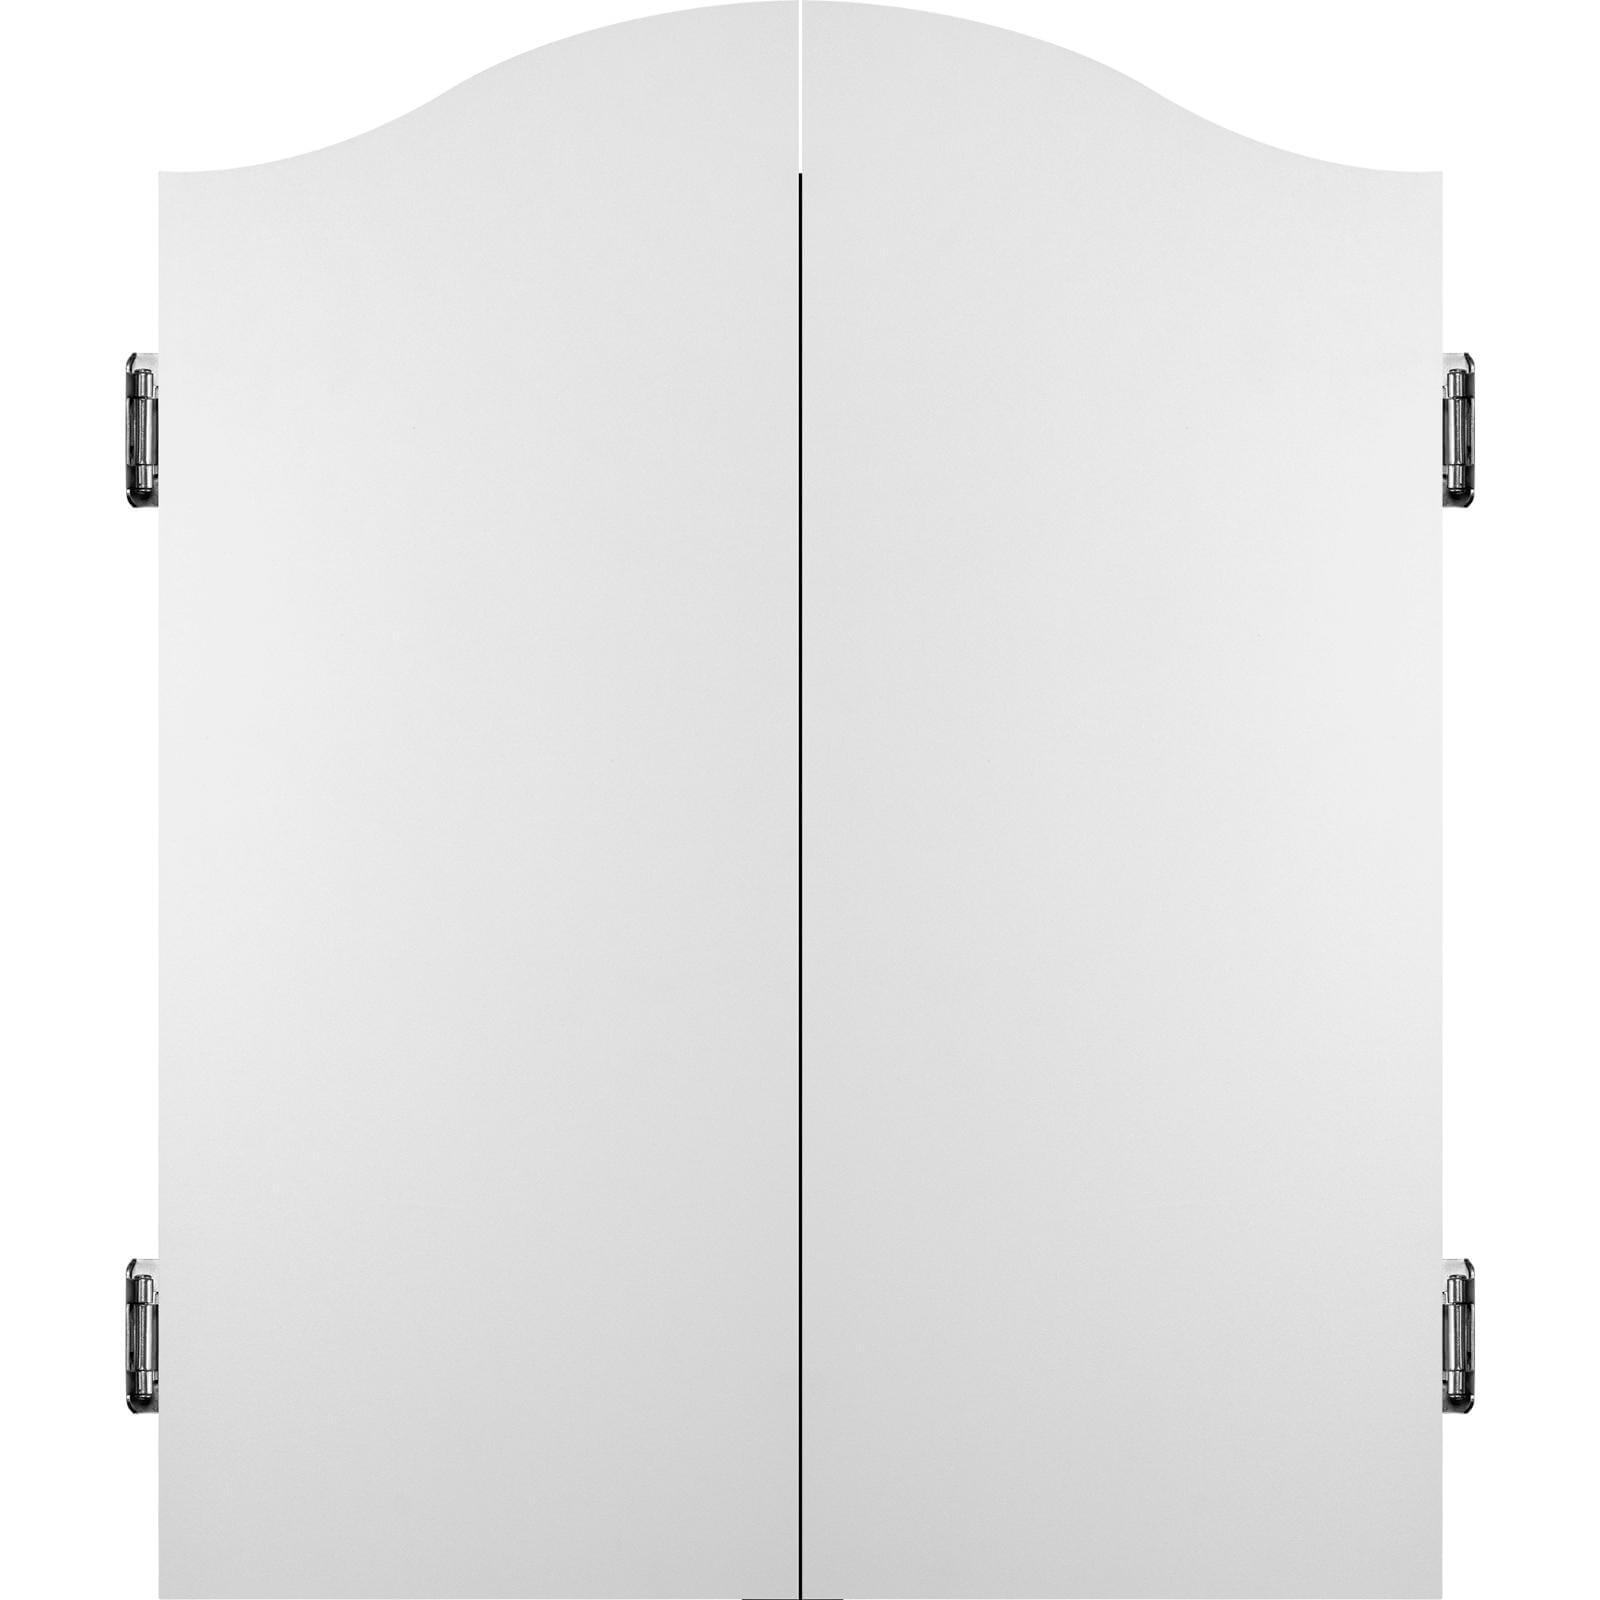 Dartboard Accessories - Mission - Dartboard Cabinet - Deluxe Quality - White 